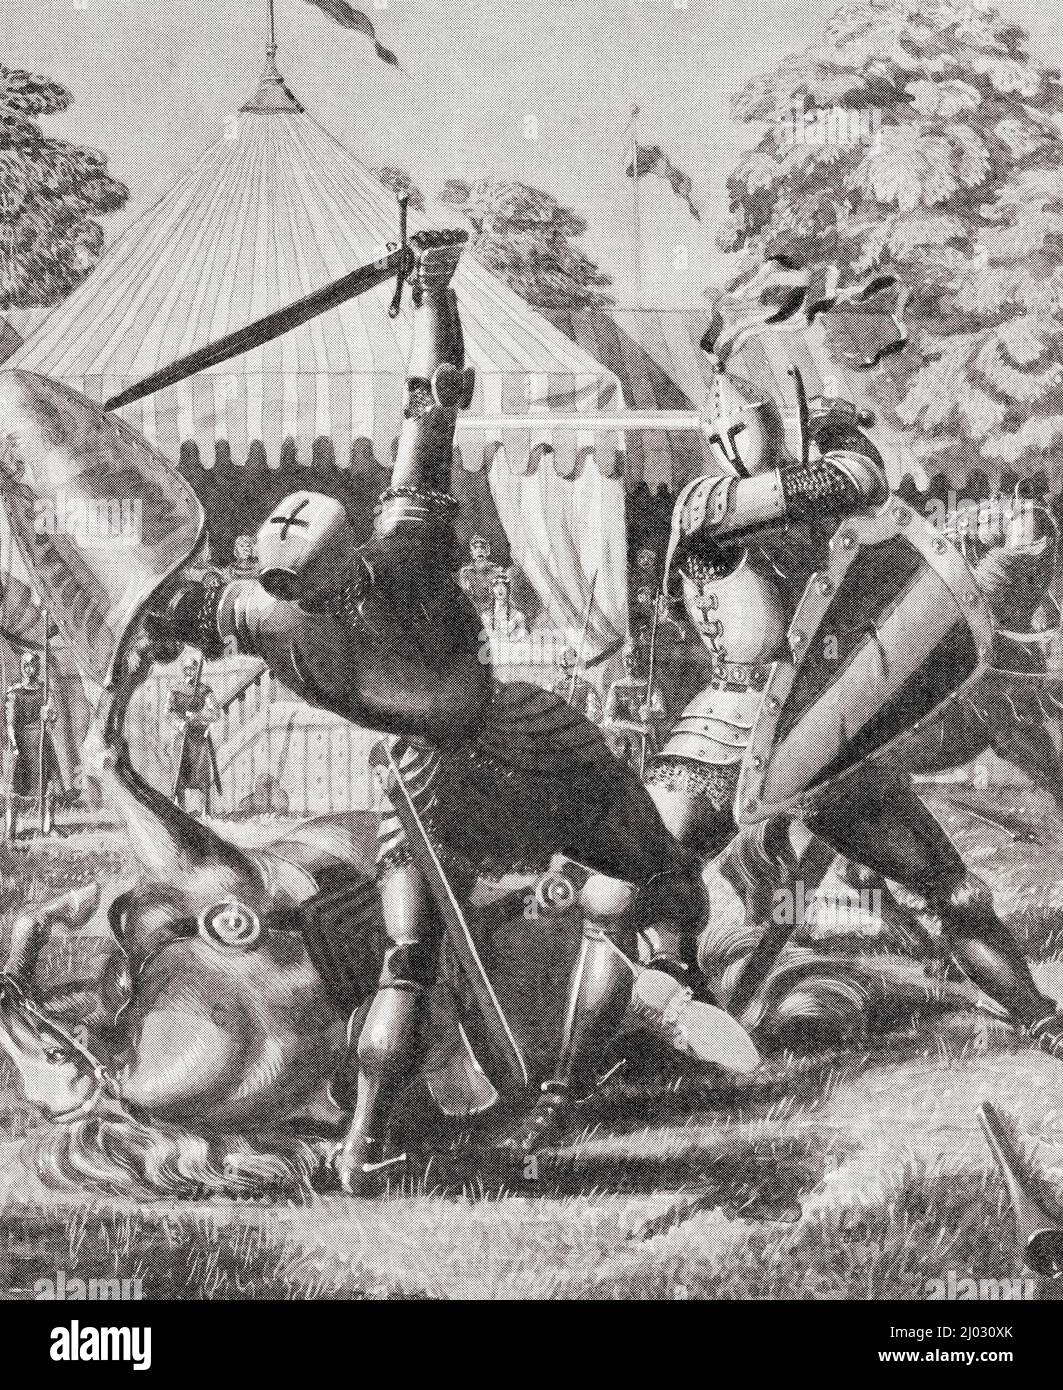 Deux chevaliers se battent à l'époque du roi Arthur. Du pays des merveilles de la connaissance, publié vers 1930 Banque D'Images